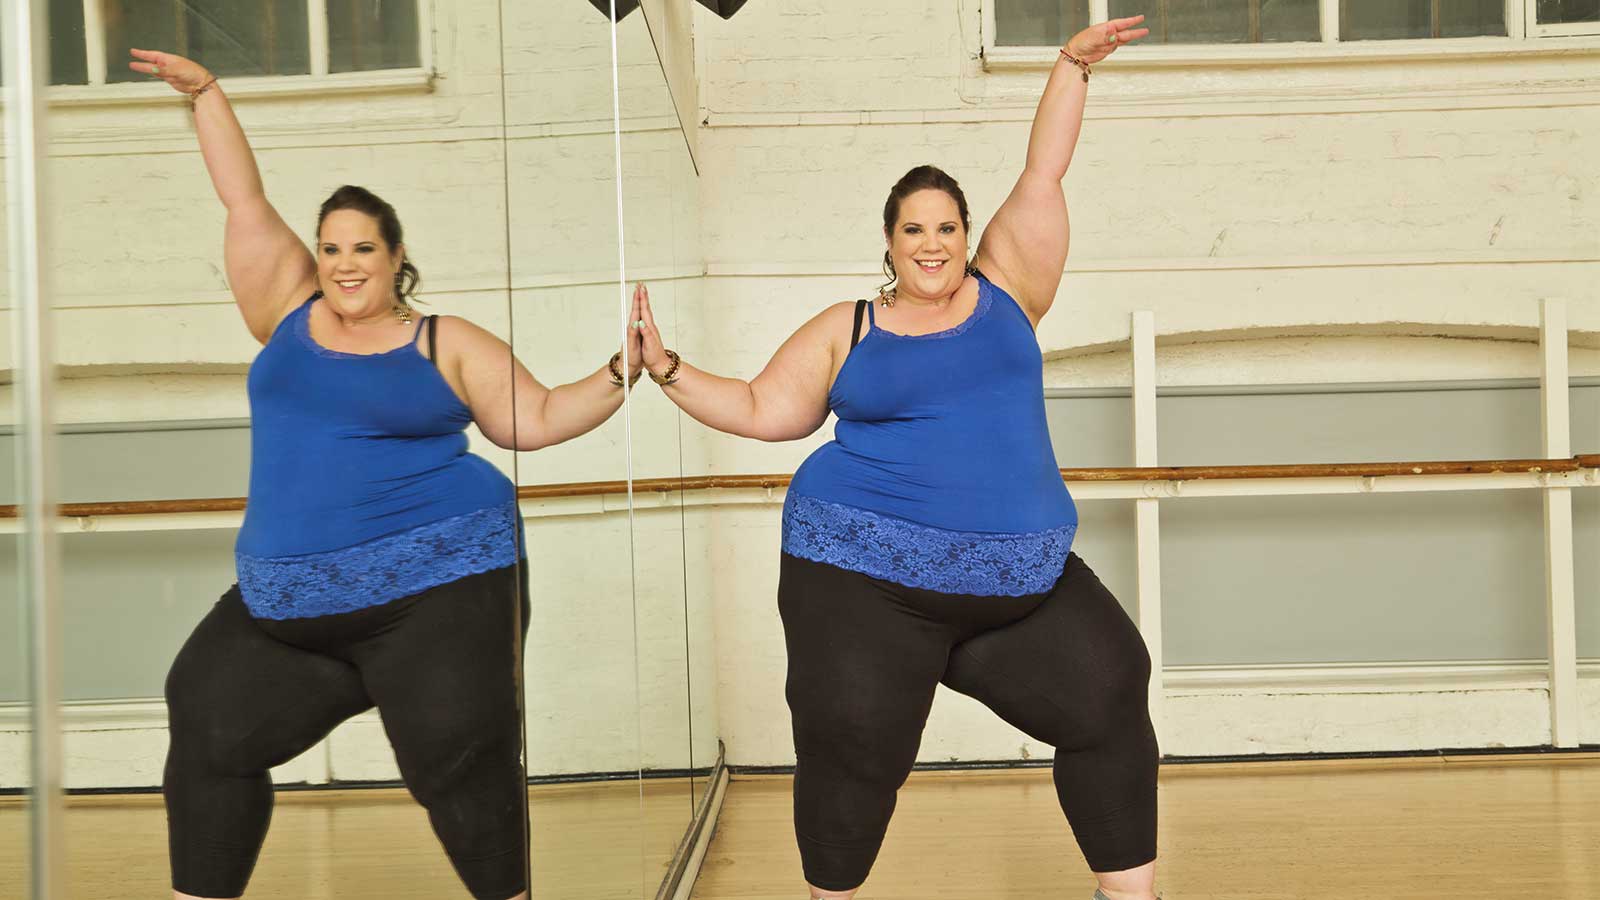 La ya famosa bailarina de talla grande volverá a mostrar a la audiencia su lucha contra los prejuicios que la sociedad tiene hacia las personas con kilos de más